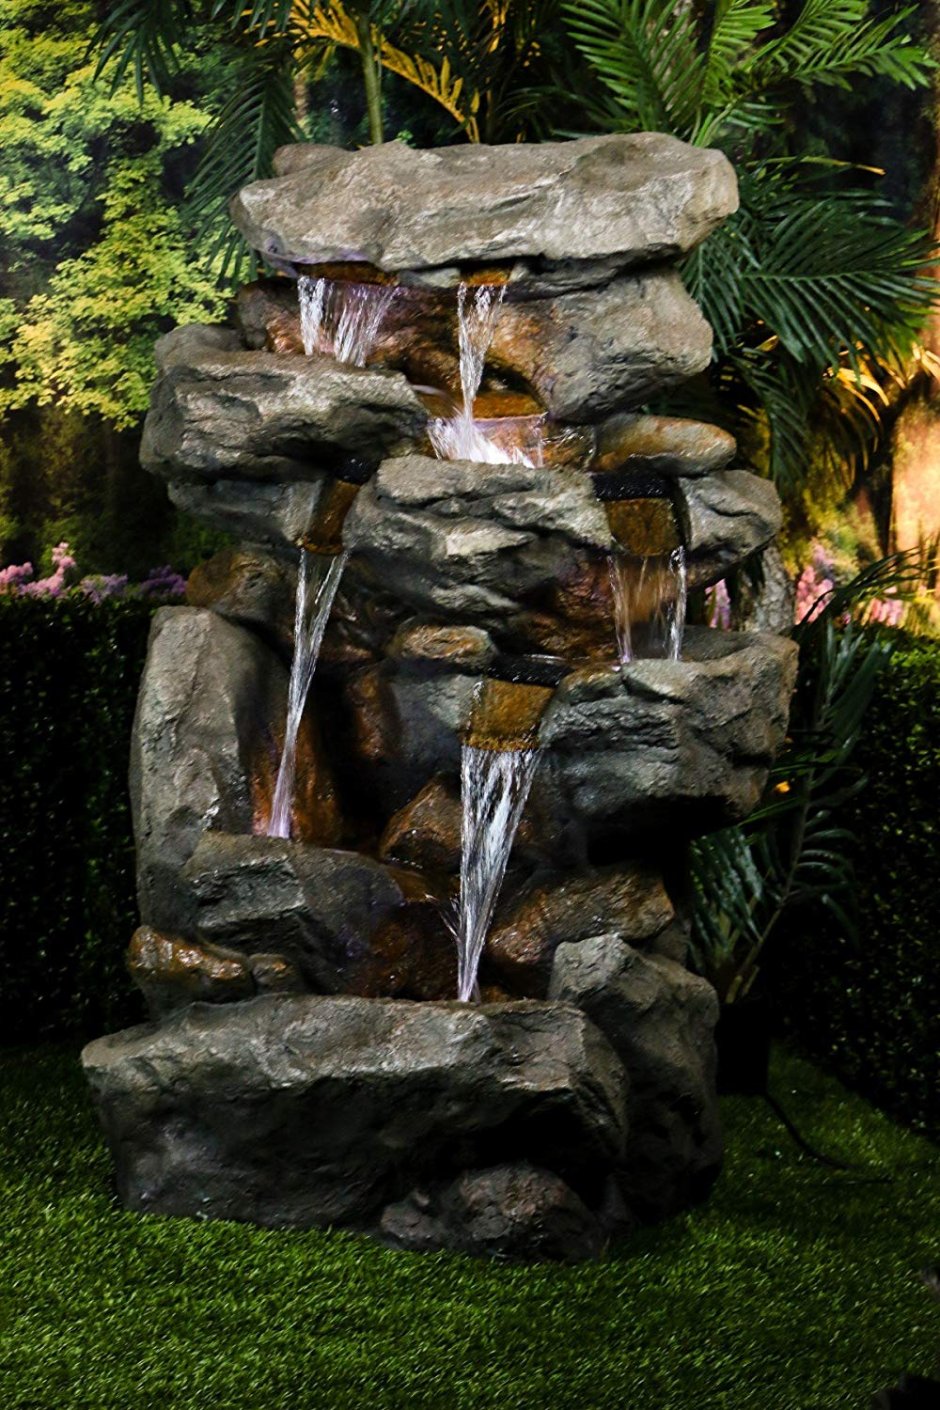 Комнатный зимний сад фонтанчик водопад